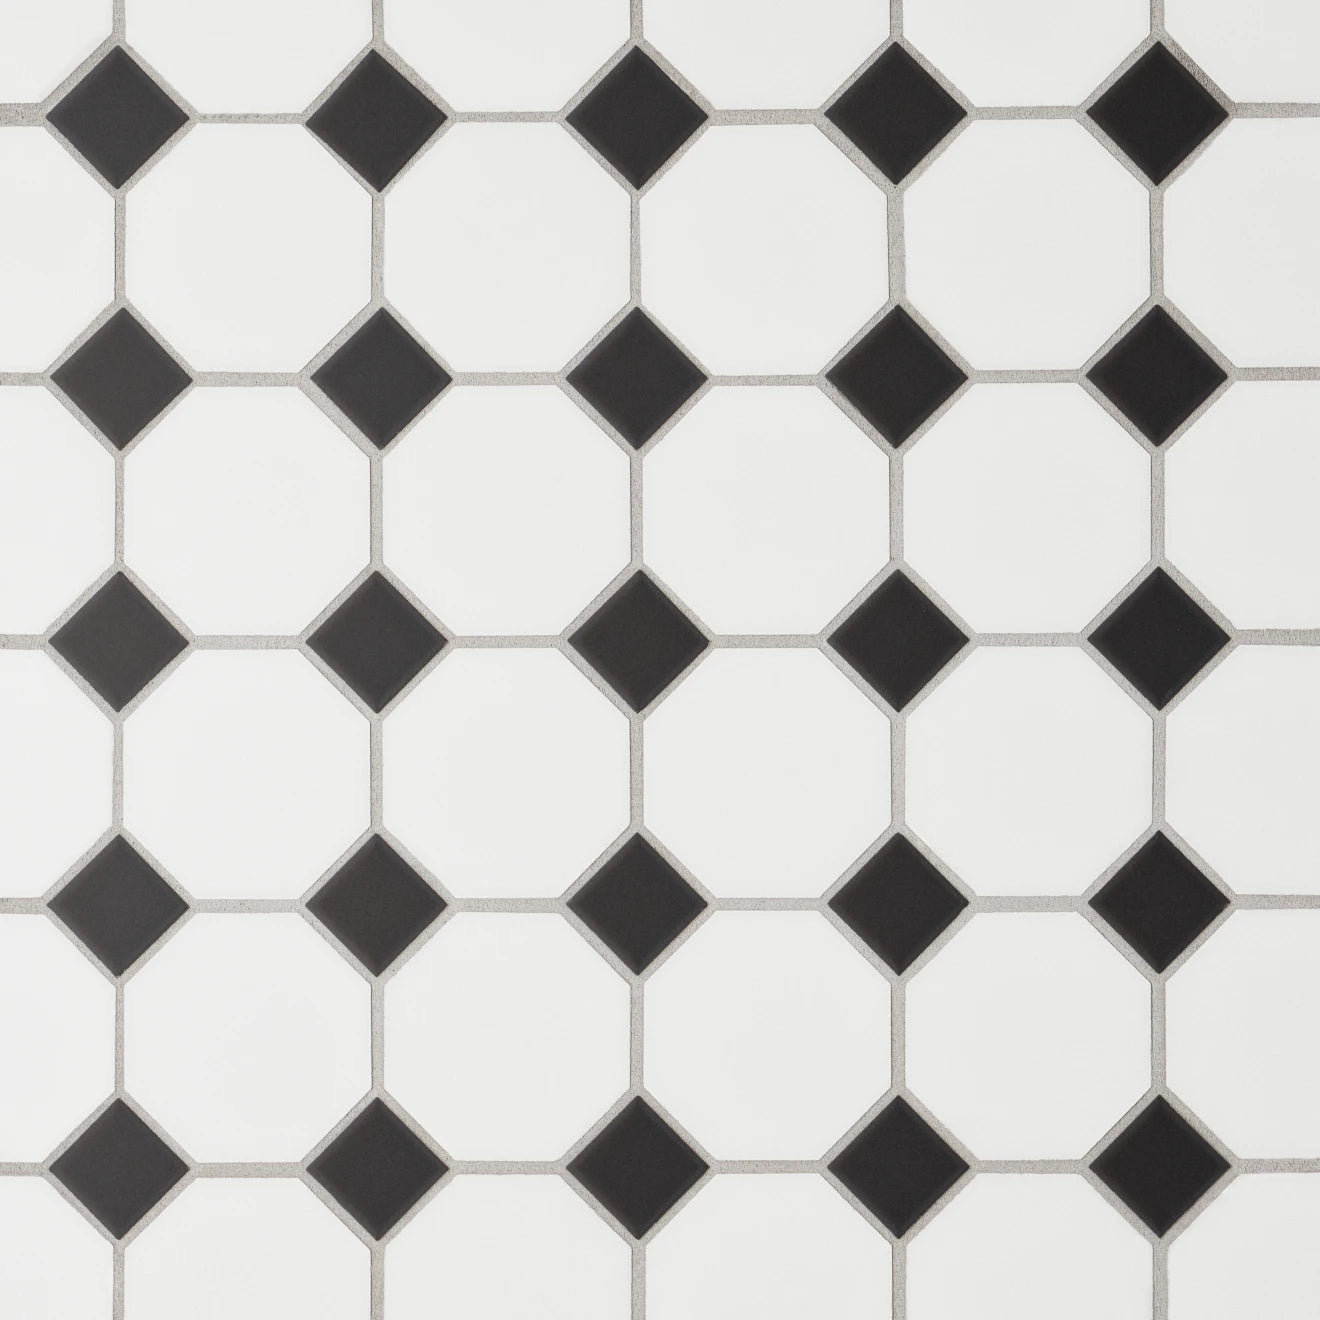 Black and white tile.